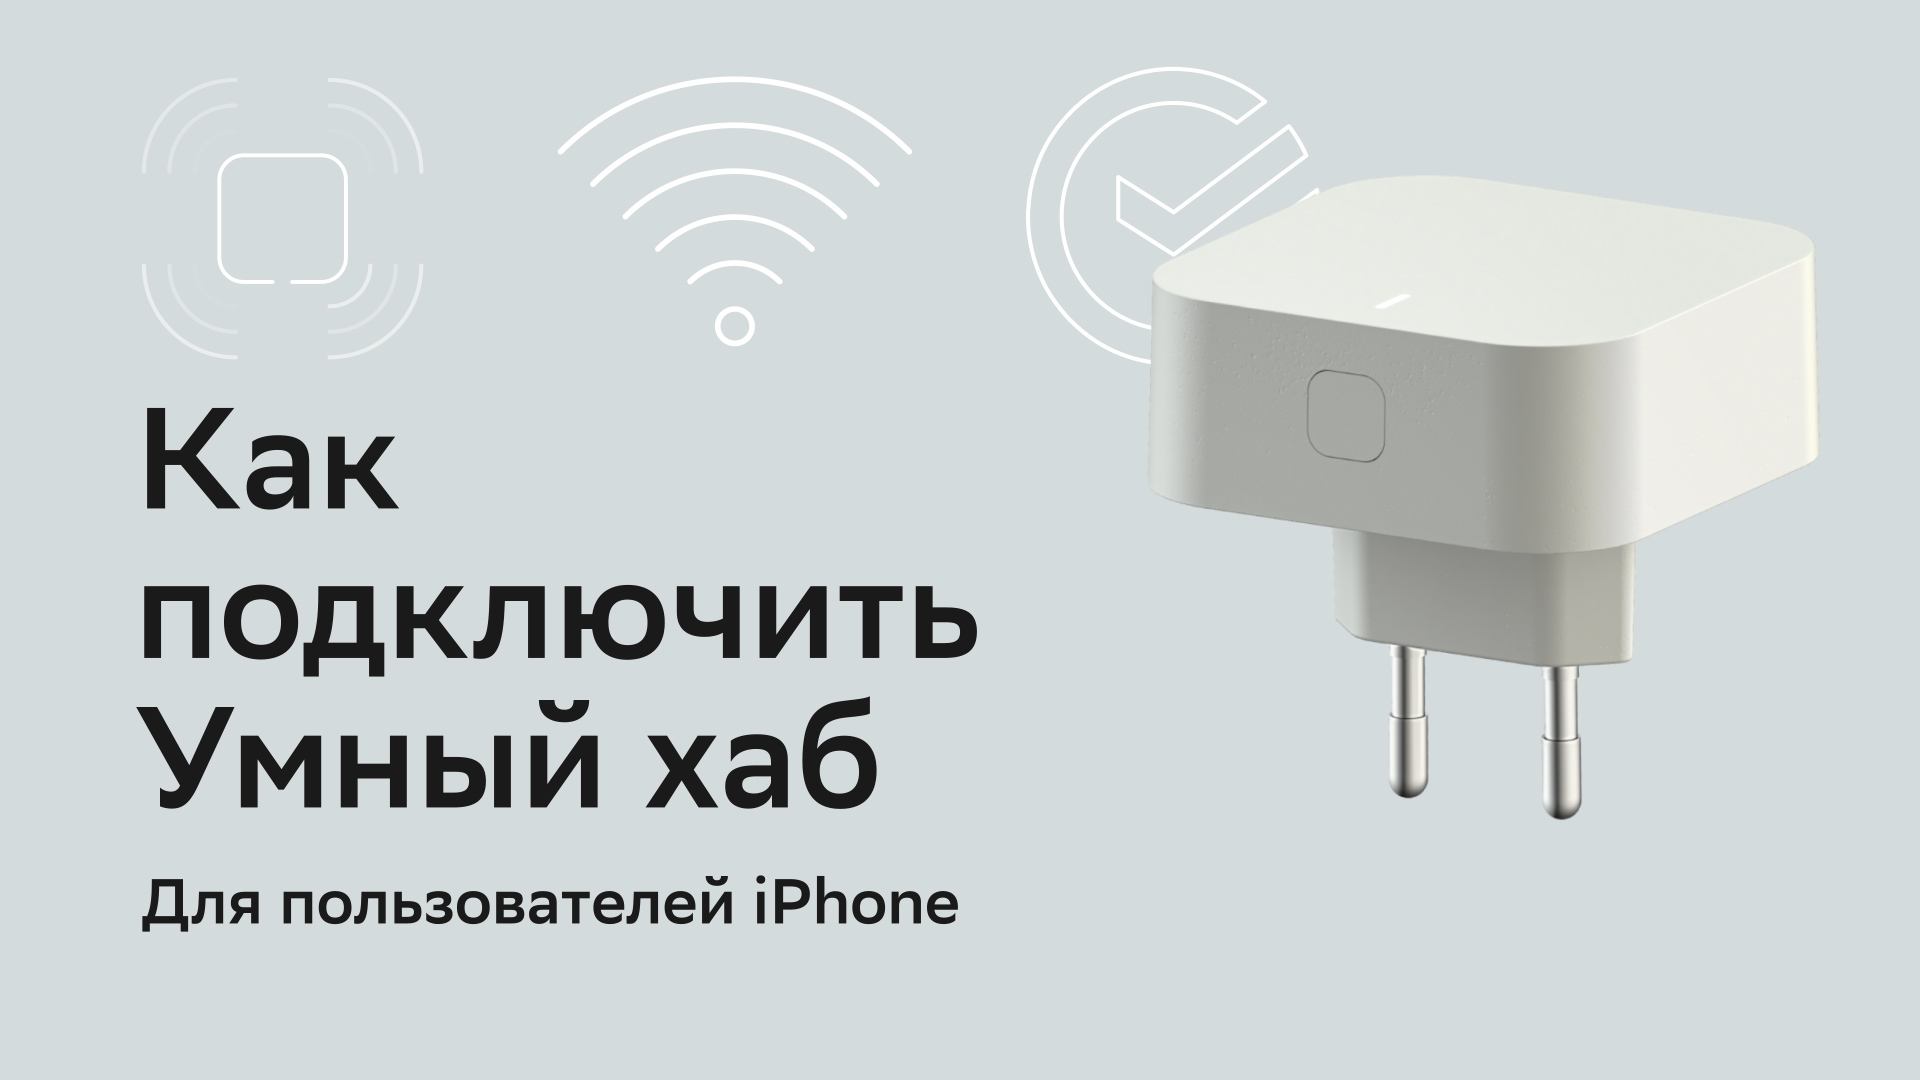 Как подключить умный хаб Sber для пользователей IPhone.